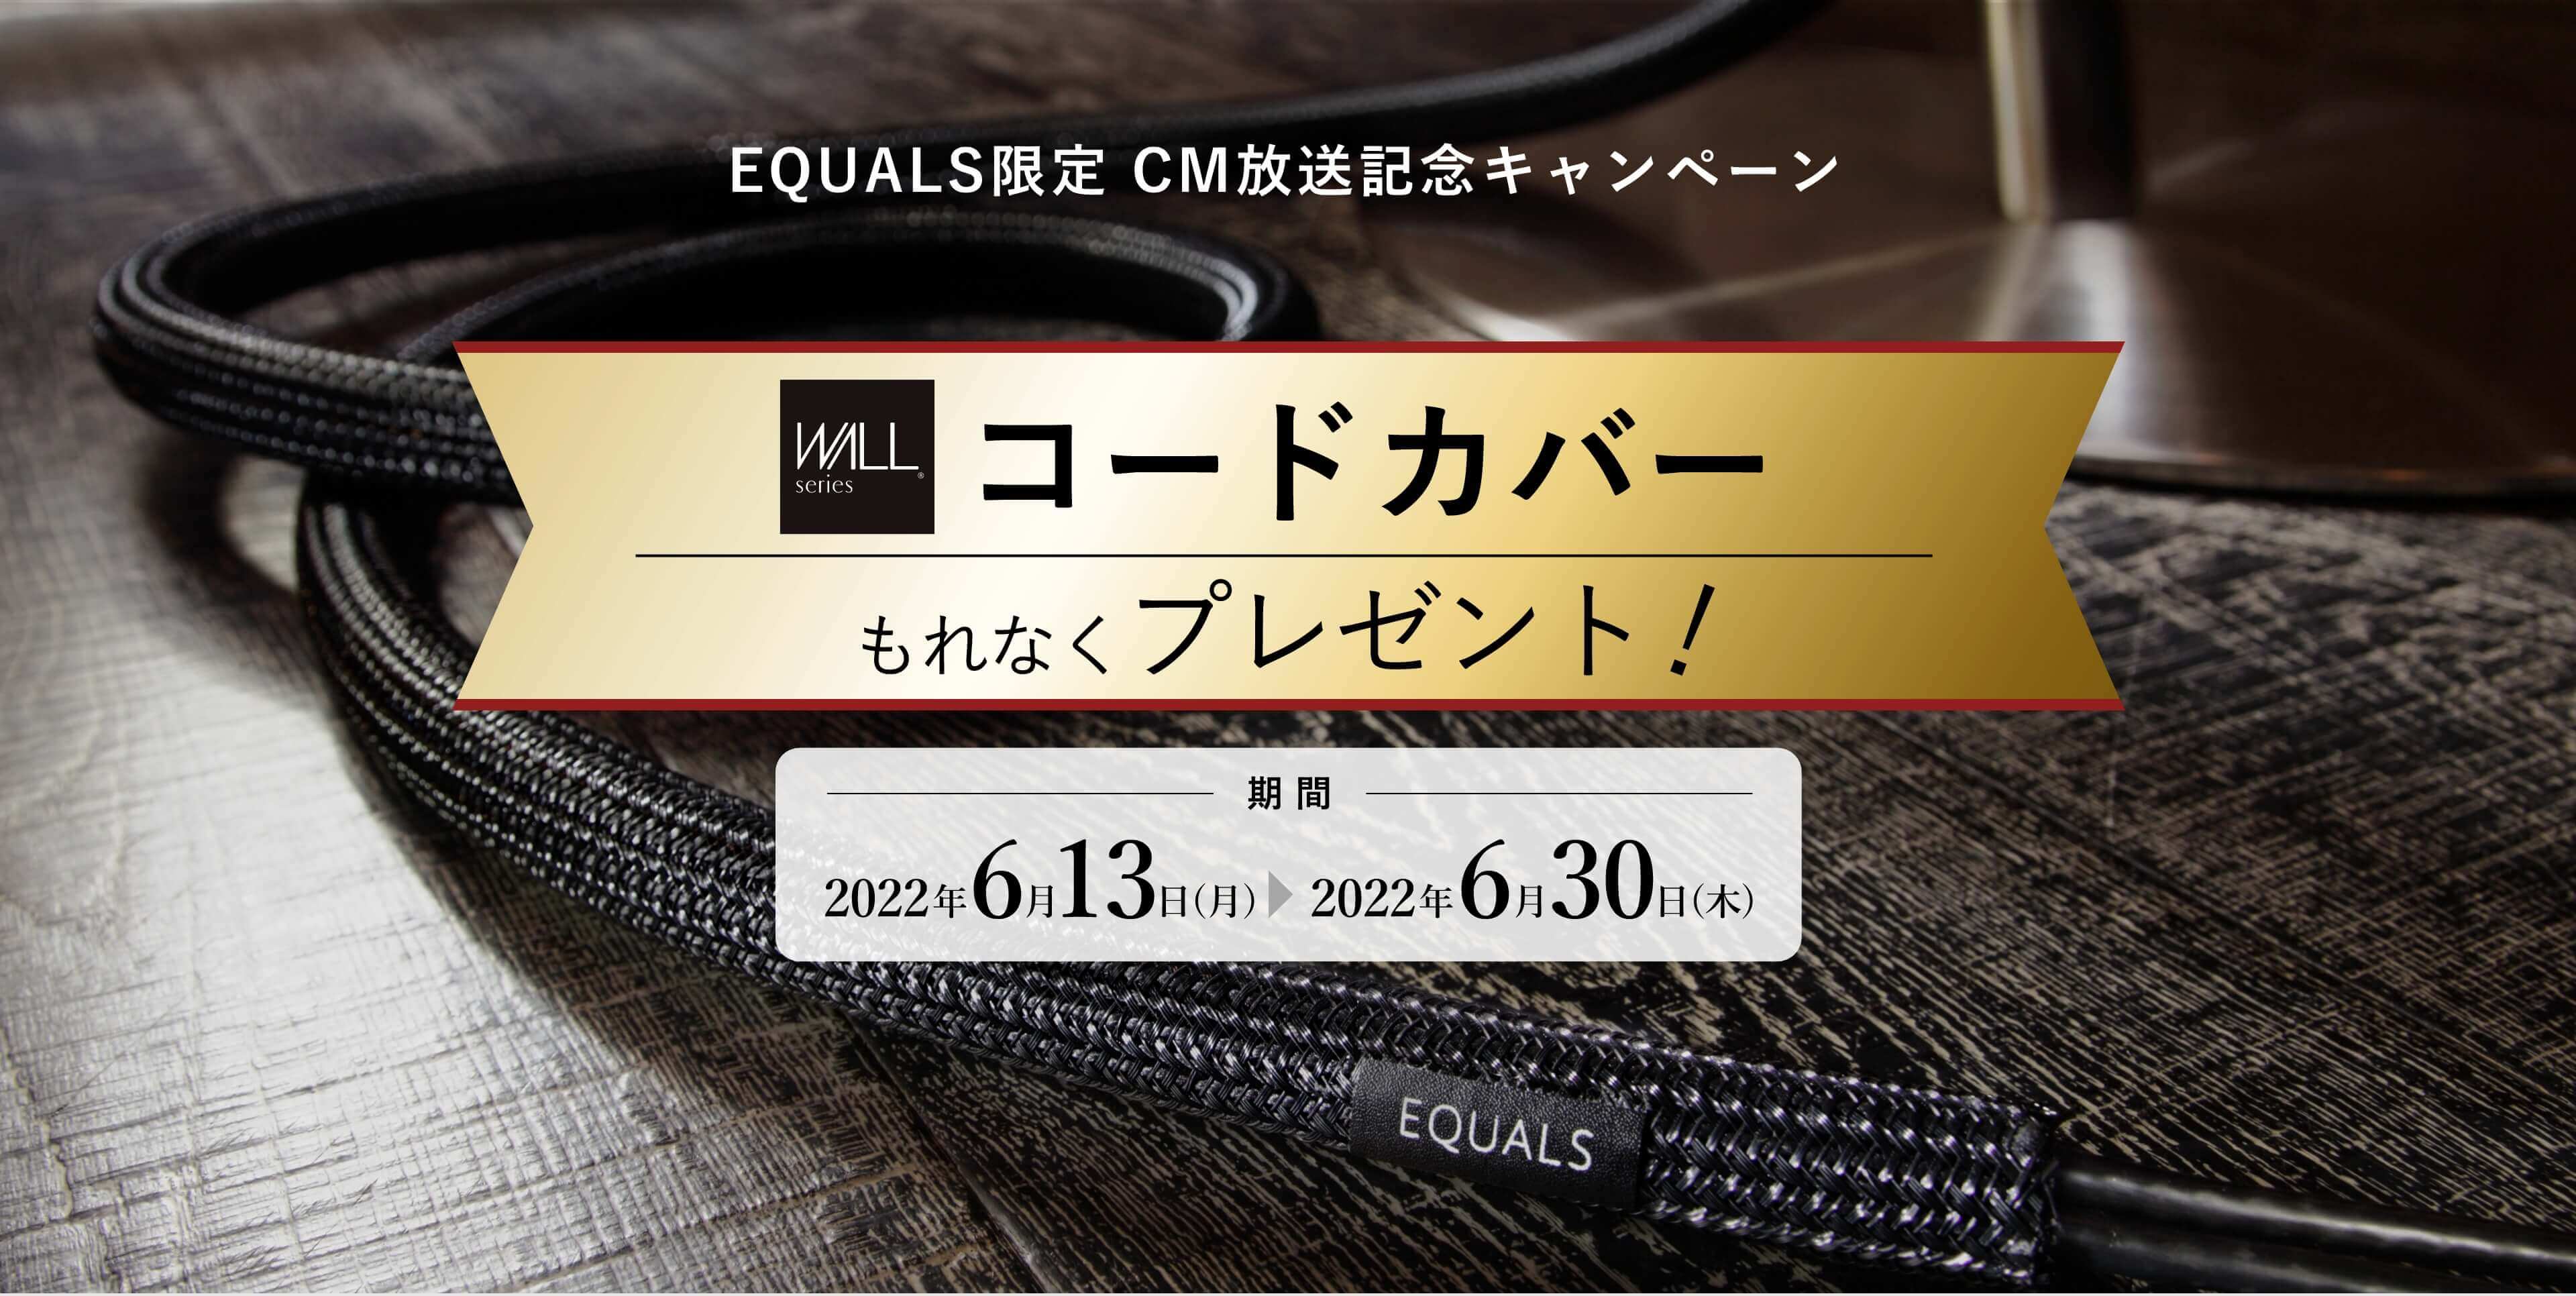 EQUALS限定 CM放送記念キャンペーンコードカバープレゼント